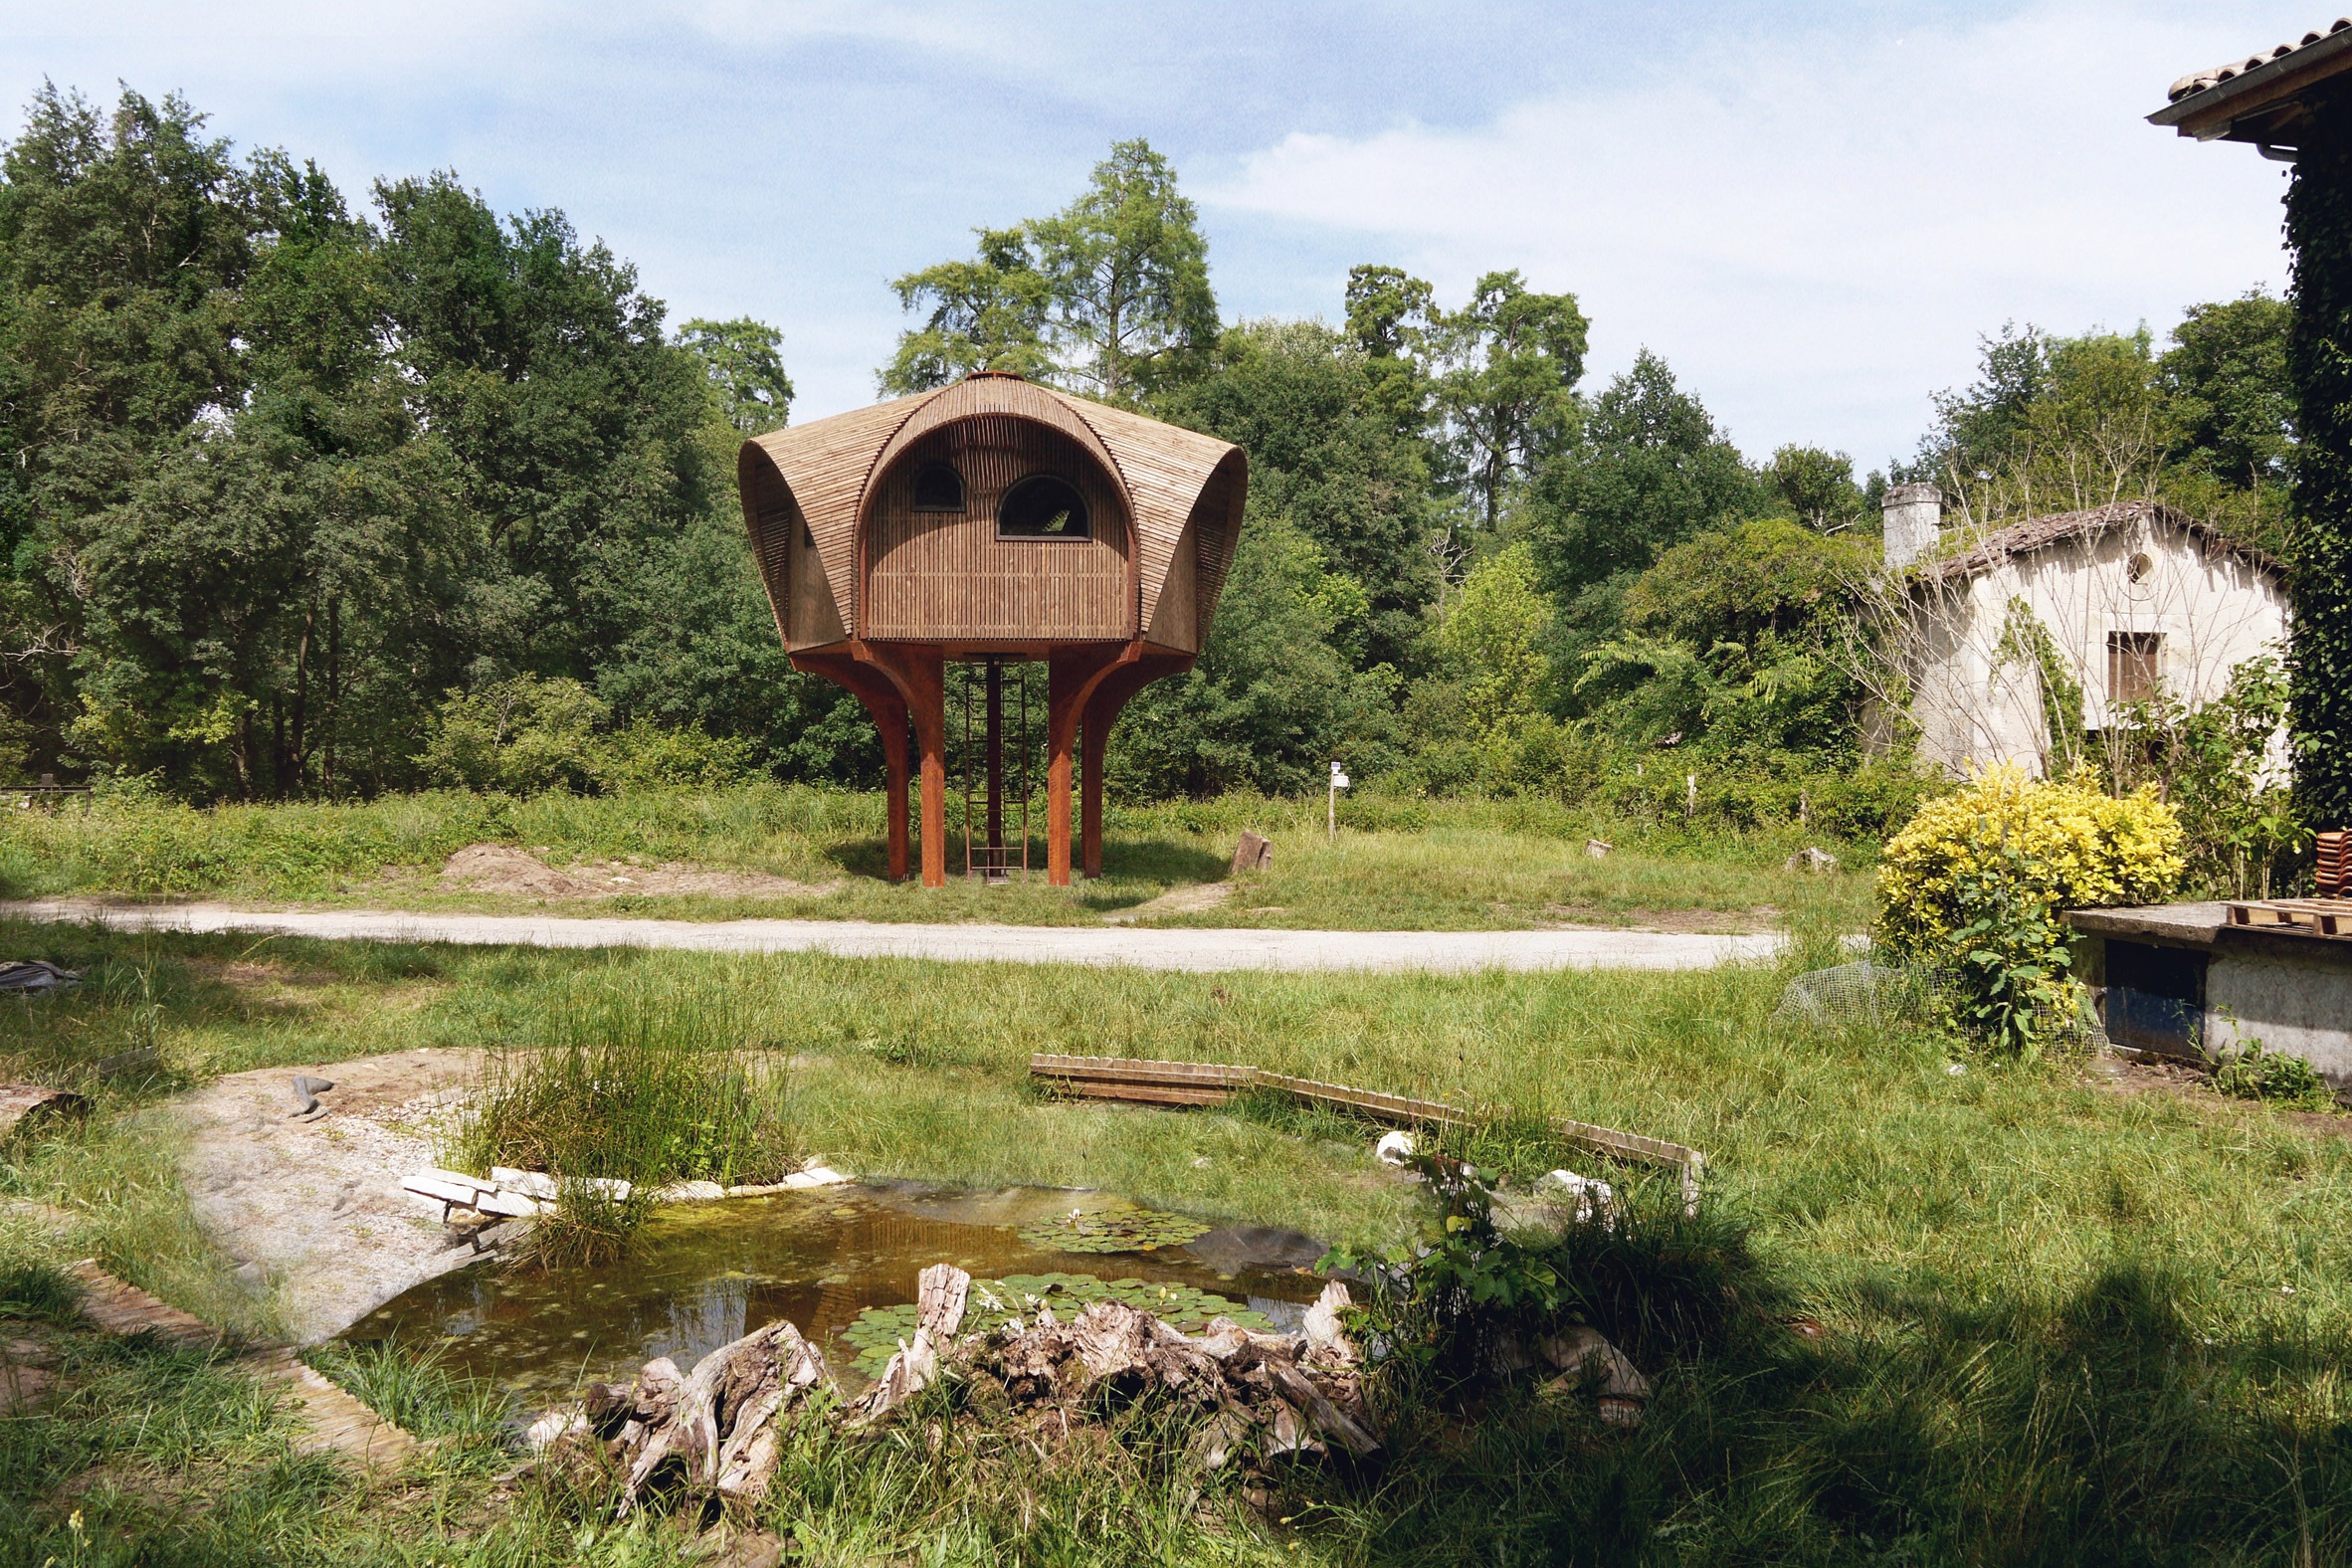 Studio Weave design a hiking shelter called Le Haut Perché